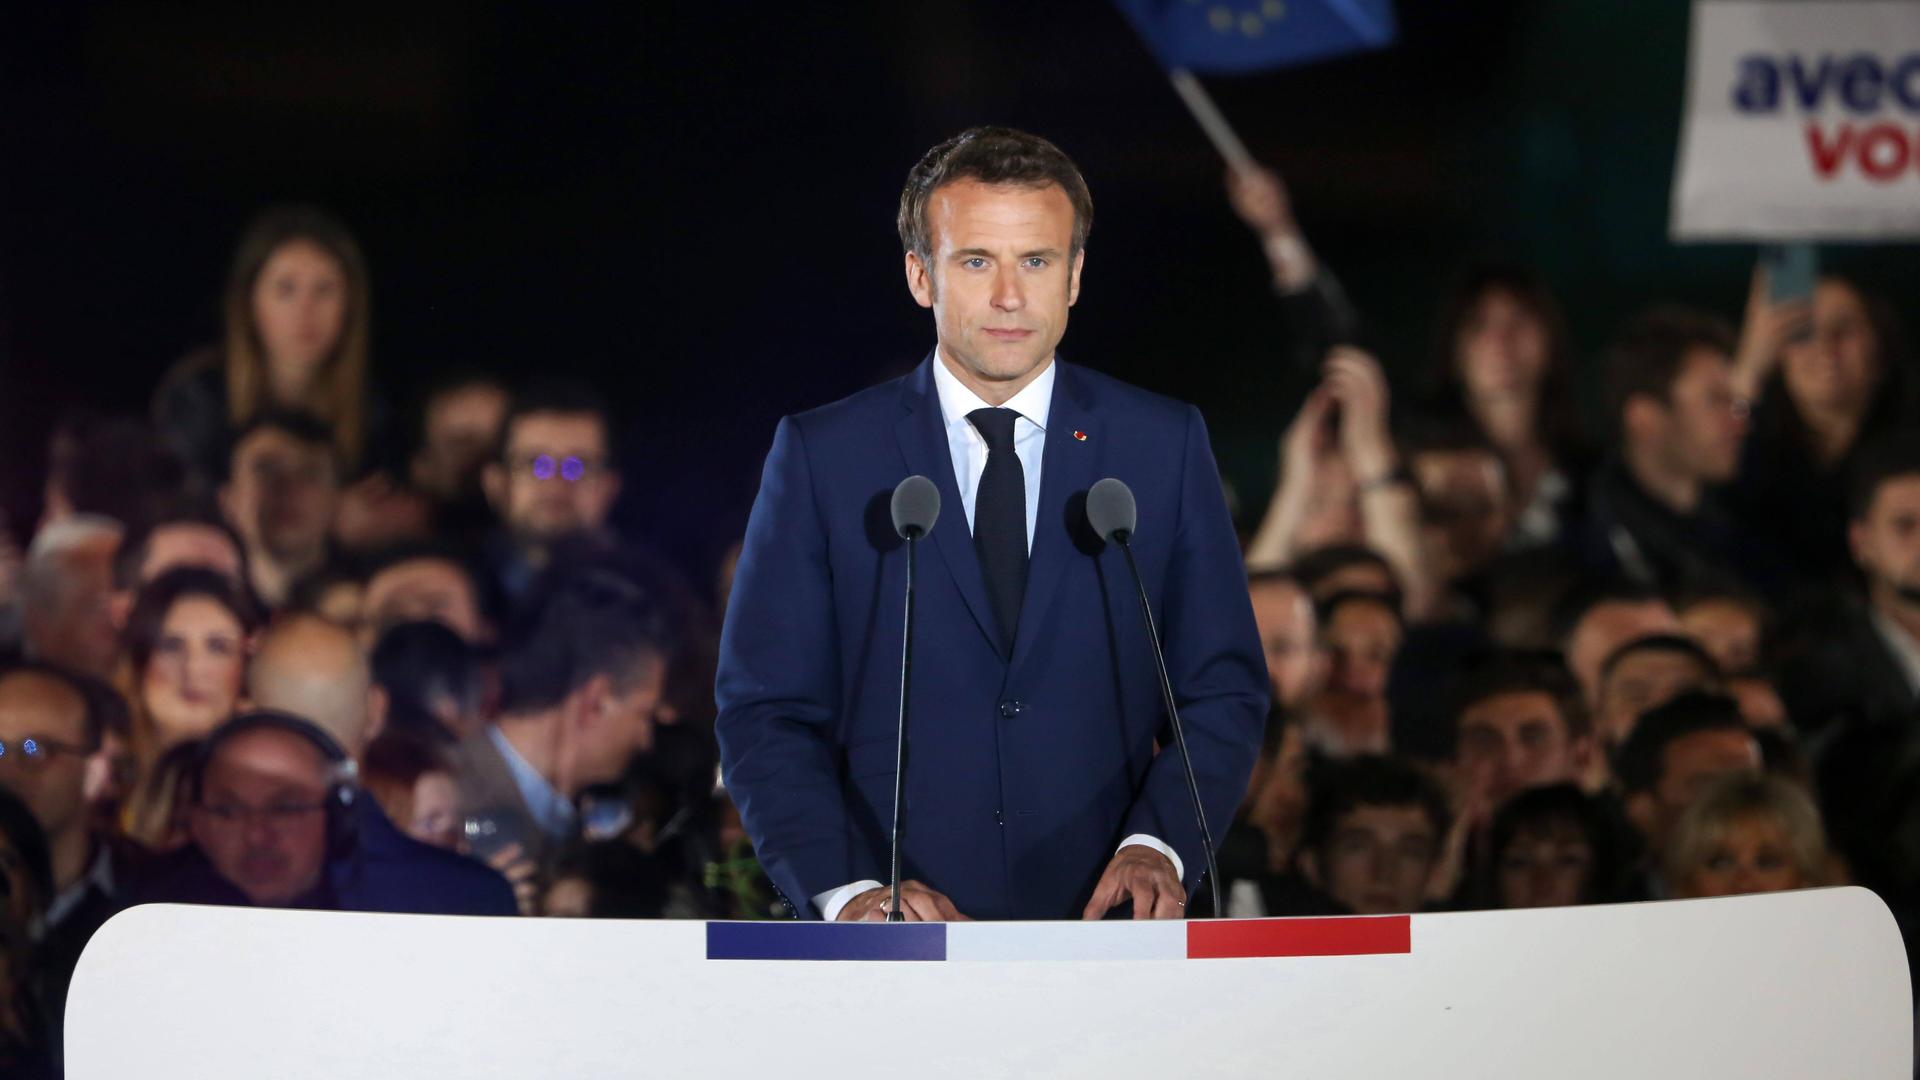 Emmanuel Macron steht an einem Rednerpult und schaut zum Publikum.